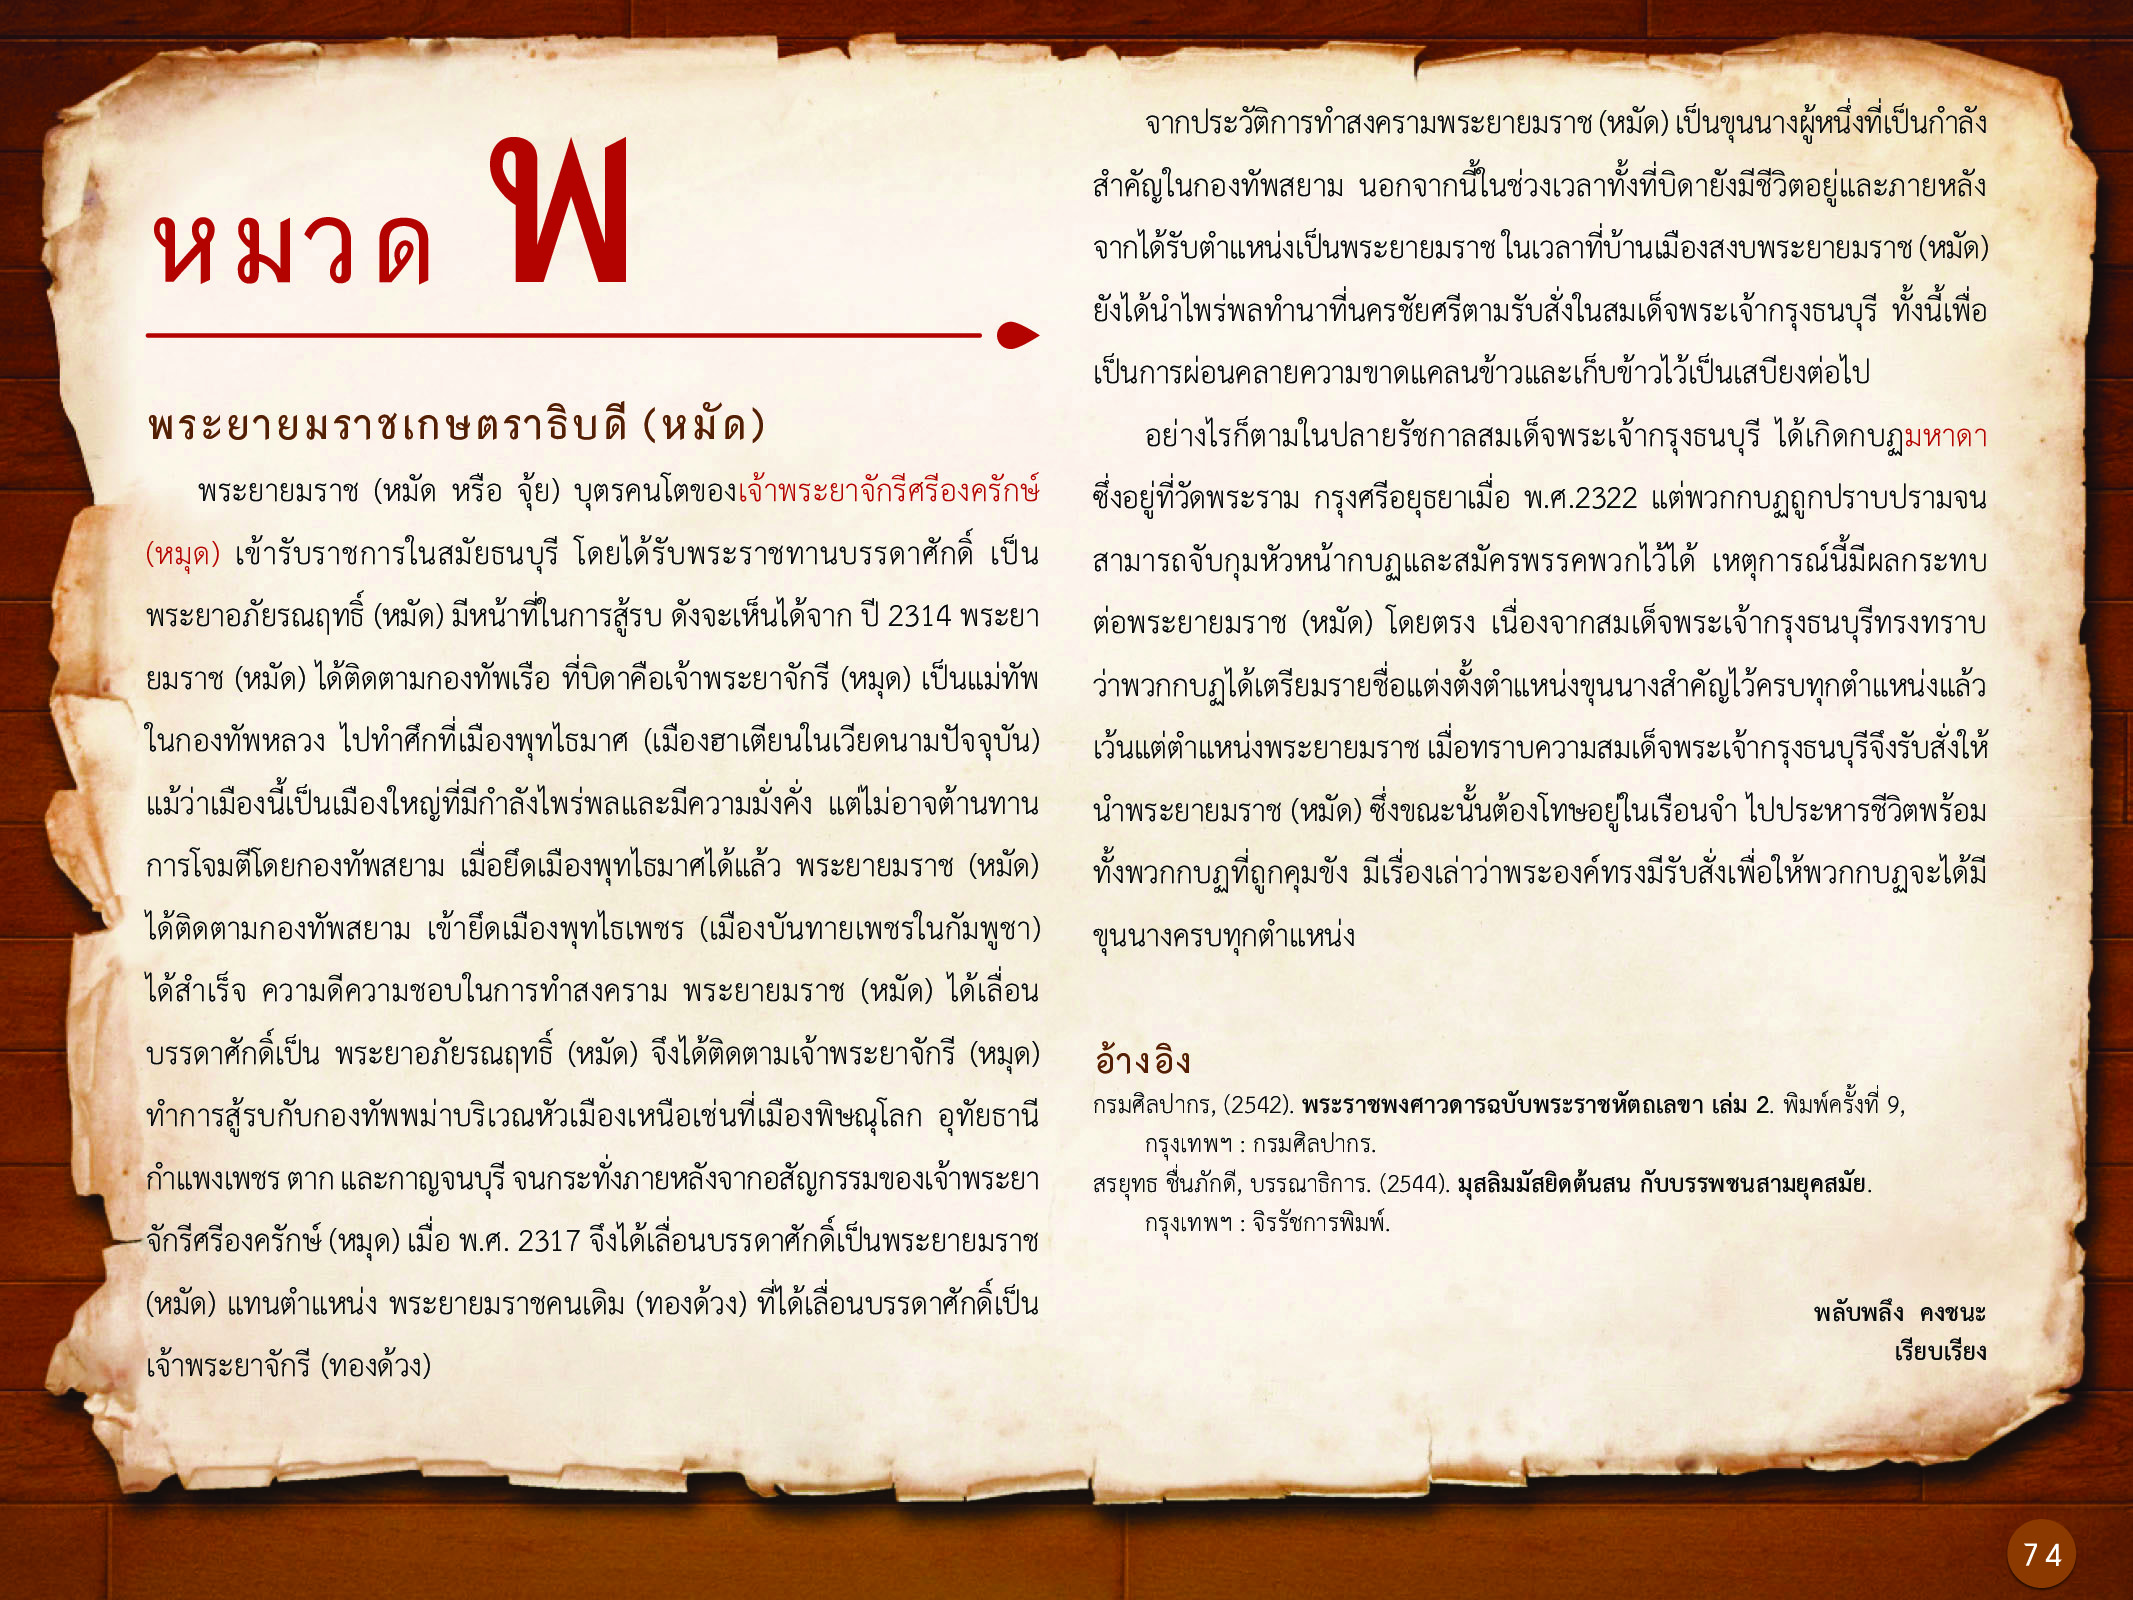 ประวัติศาสตร์กรุงธนบุรี ./images/history_dhonburi/74.jpg